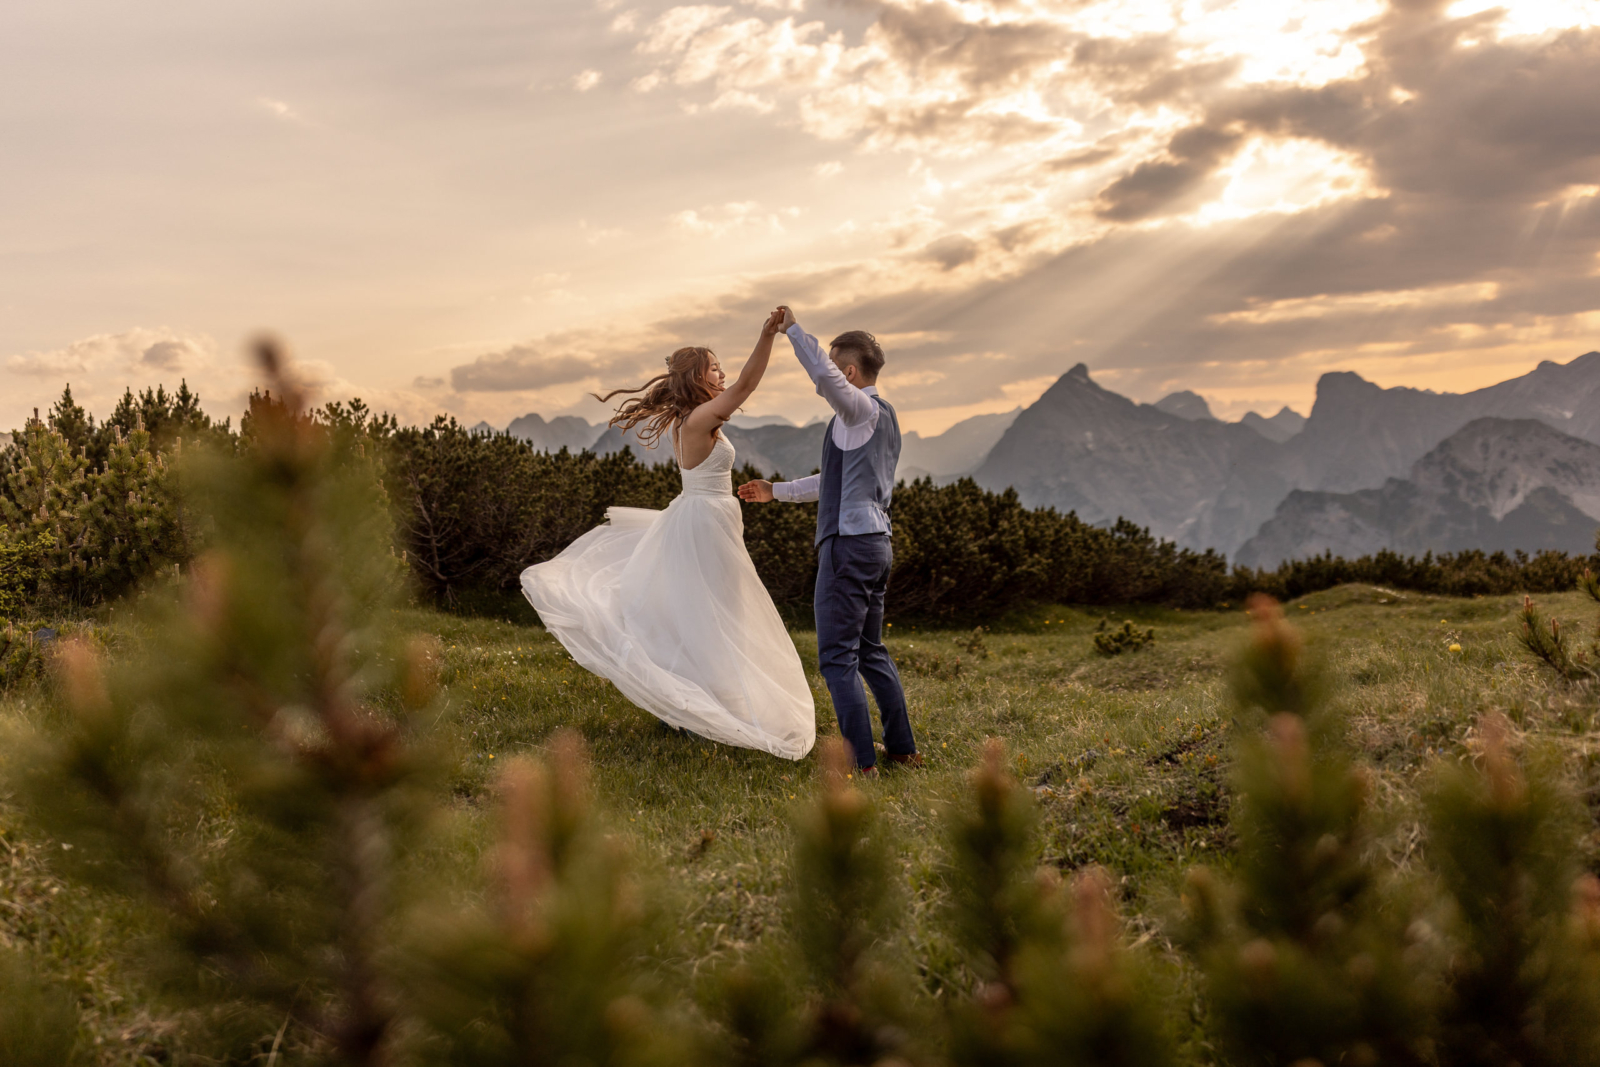 Elopement wedding in the alps